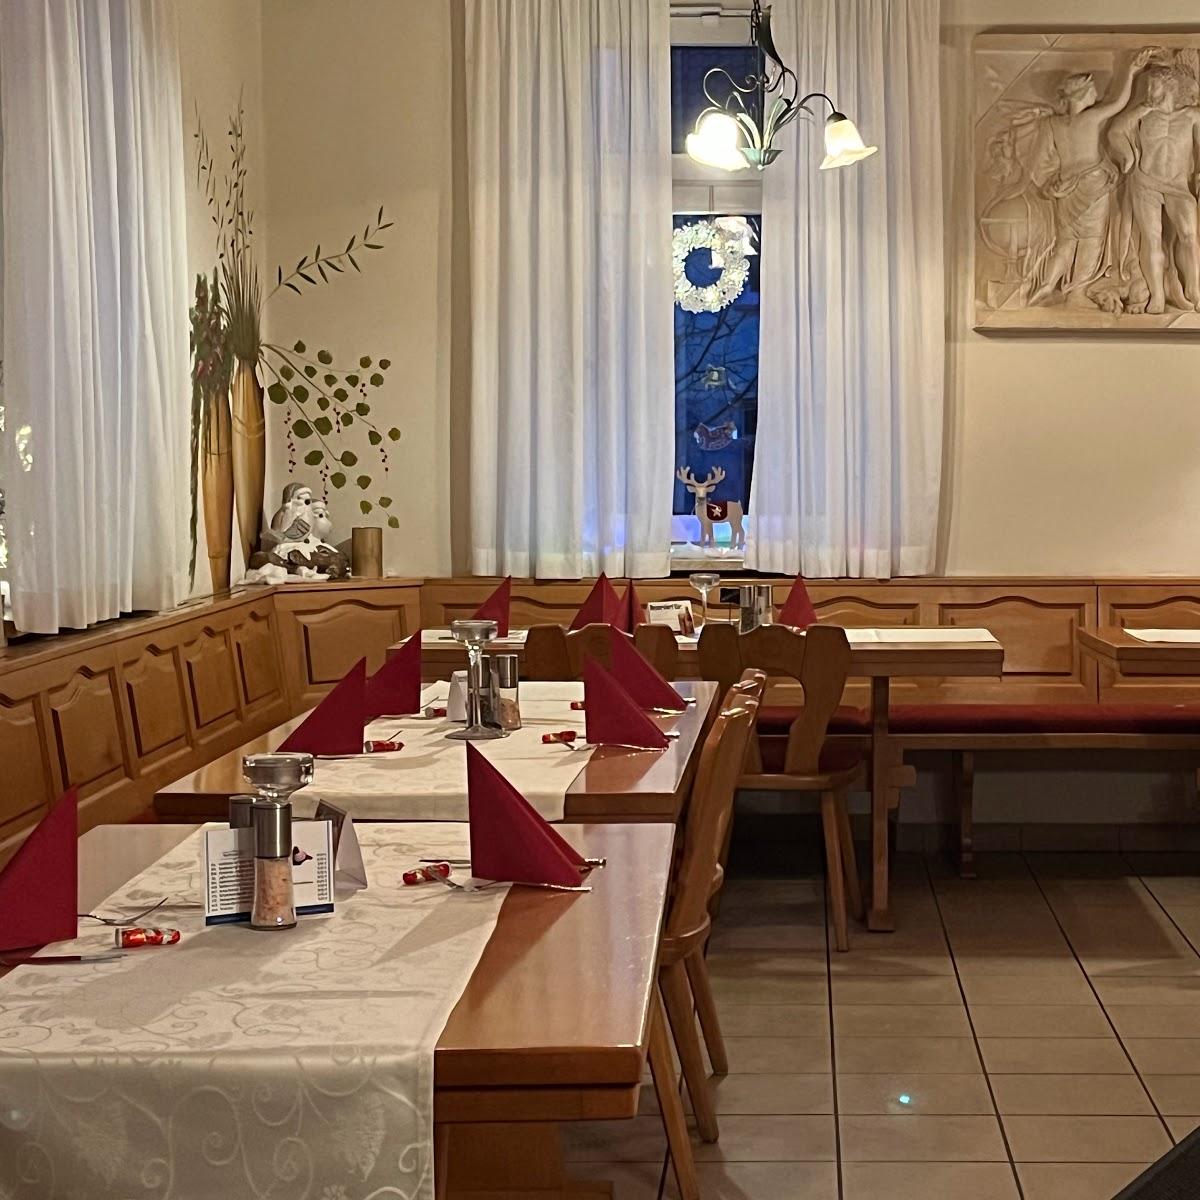 Restaurant "Restaurant Santorini" in Wiesentheid